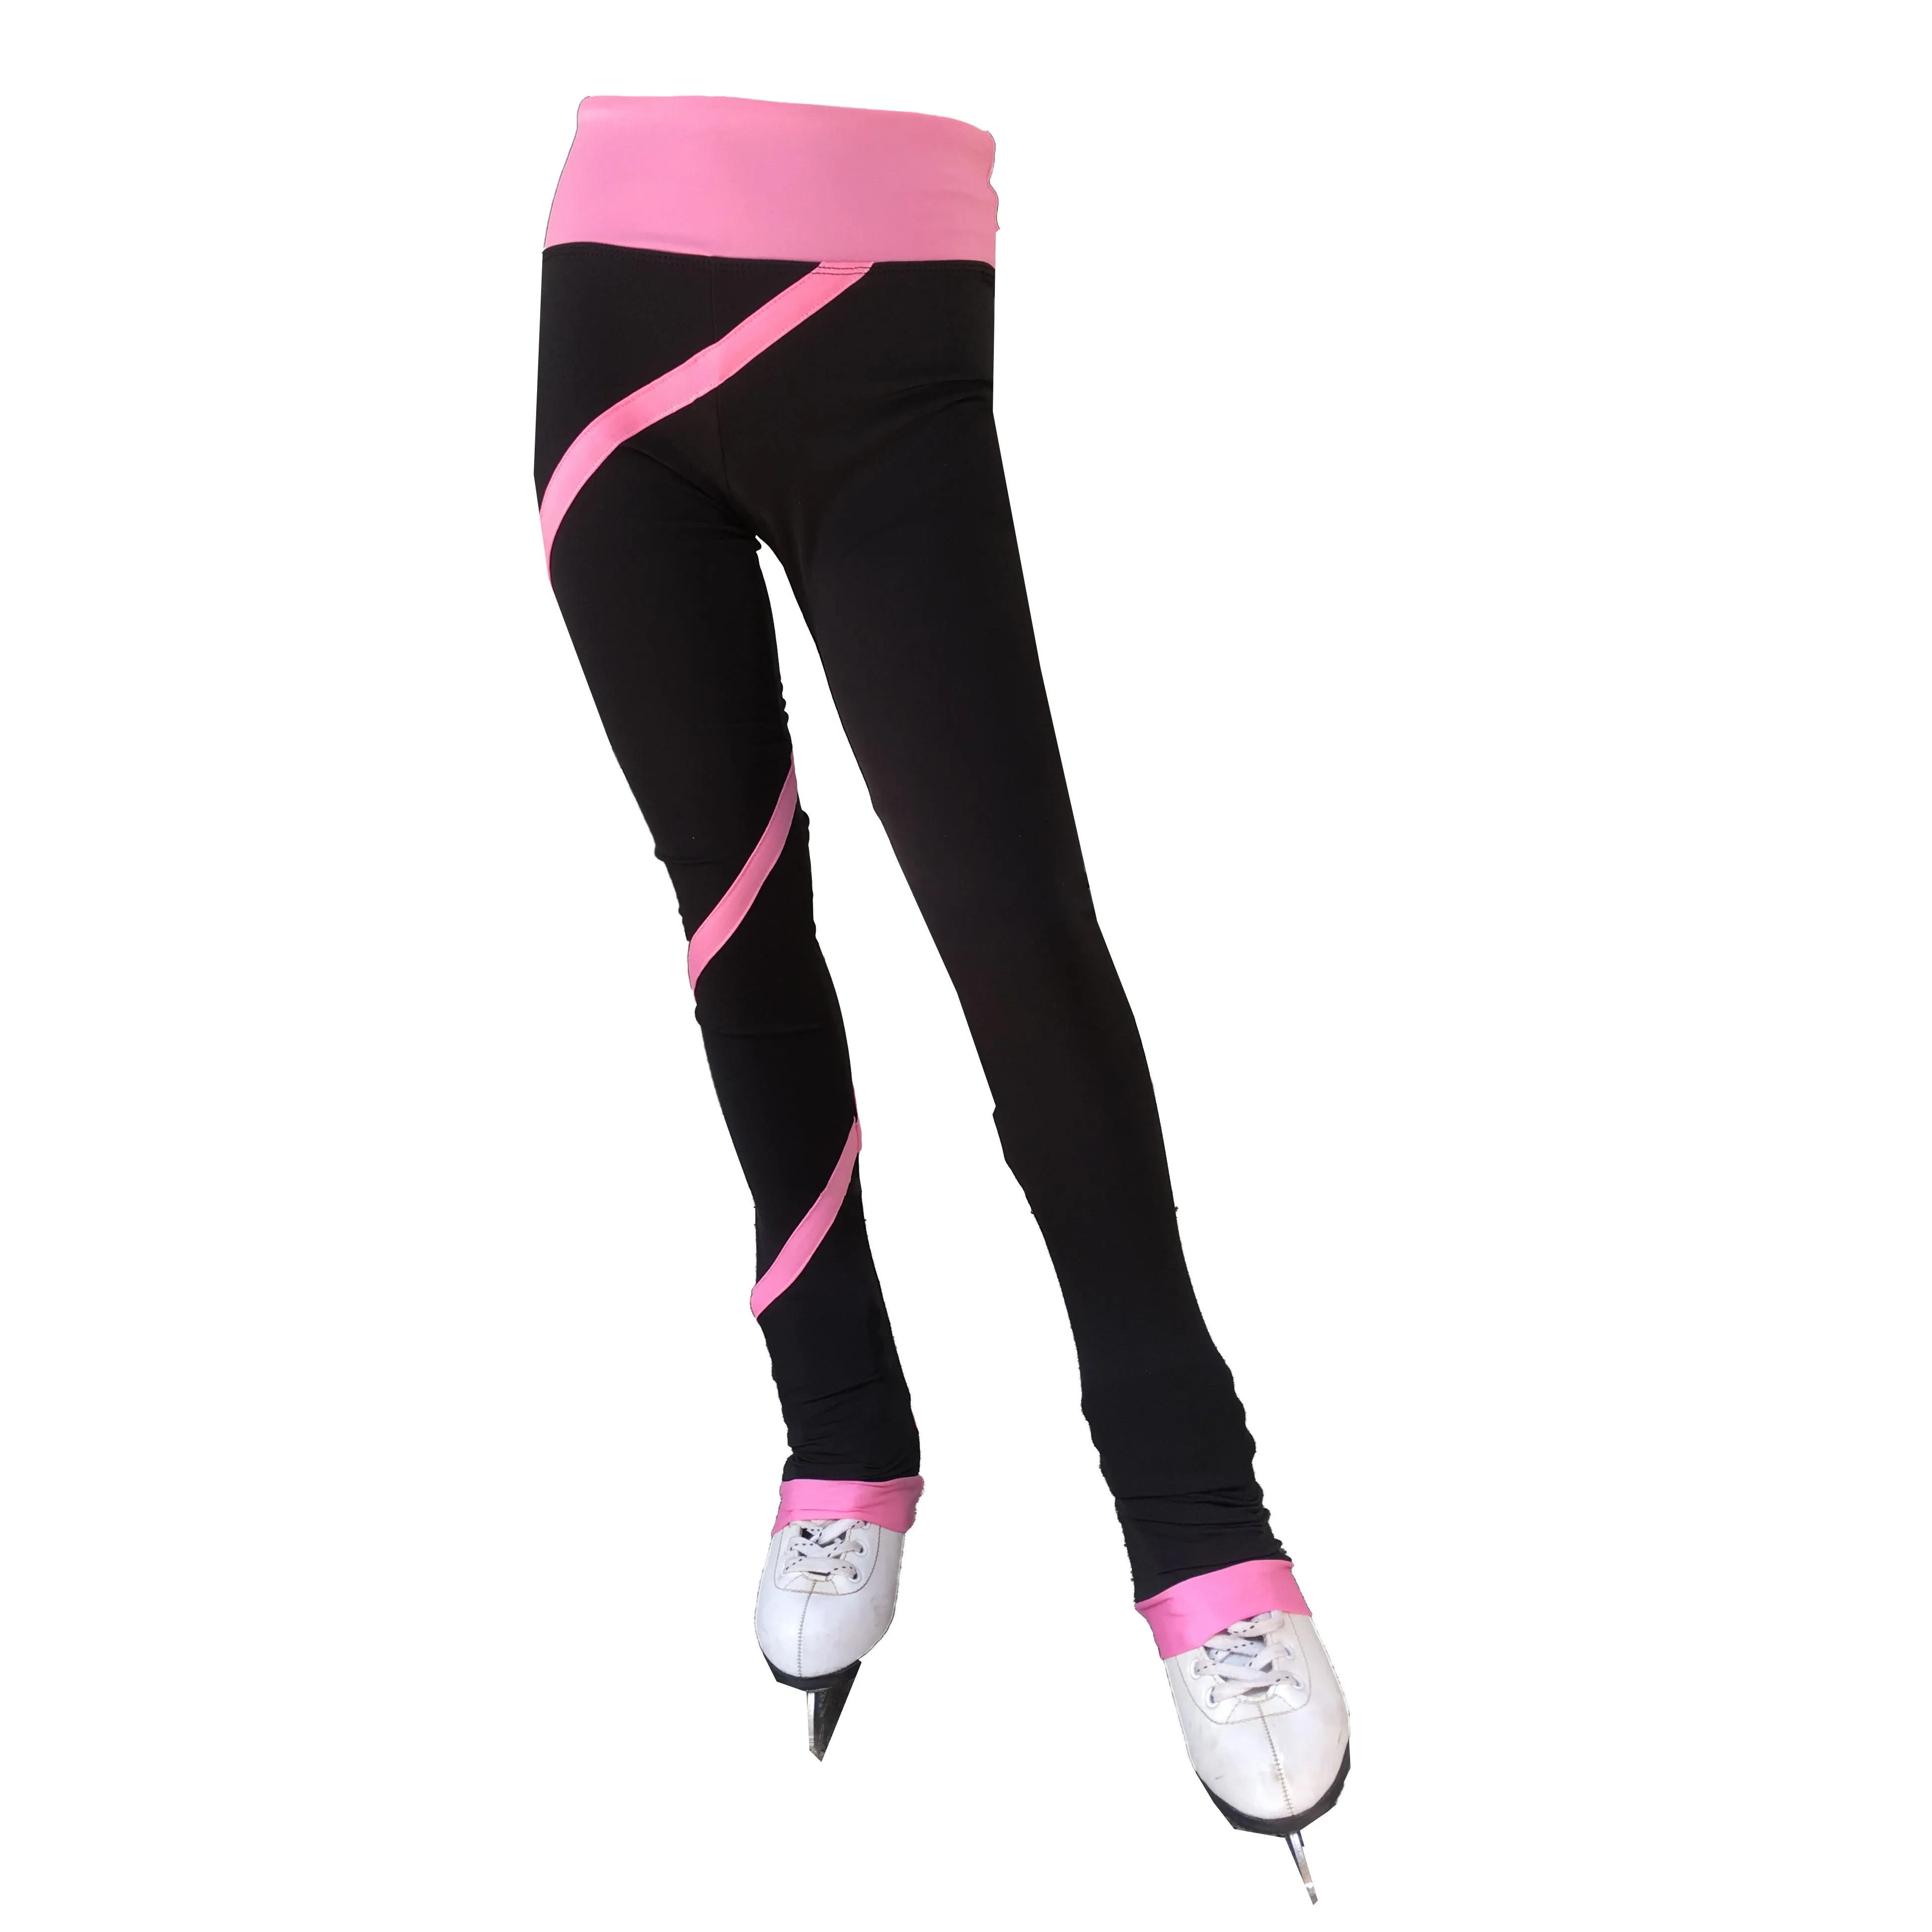 Pattinaggio di figura di stirata dei pantaloni del filato rosa linee pattinaggio vestiti delle ragazze costumi di formazione